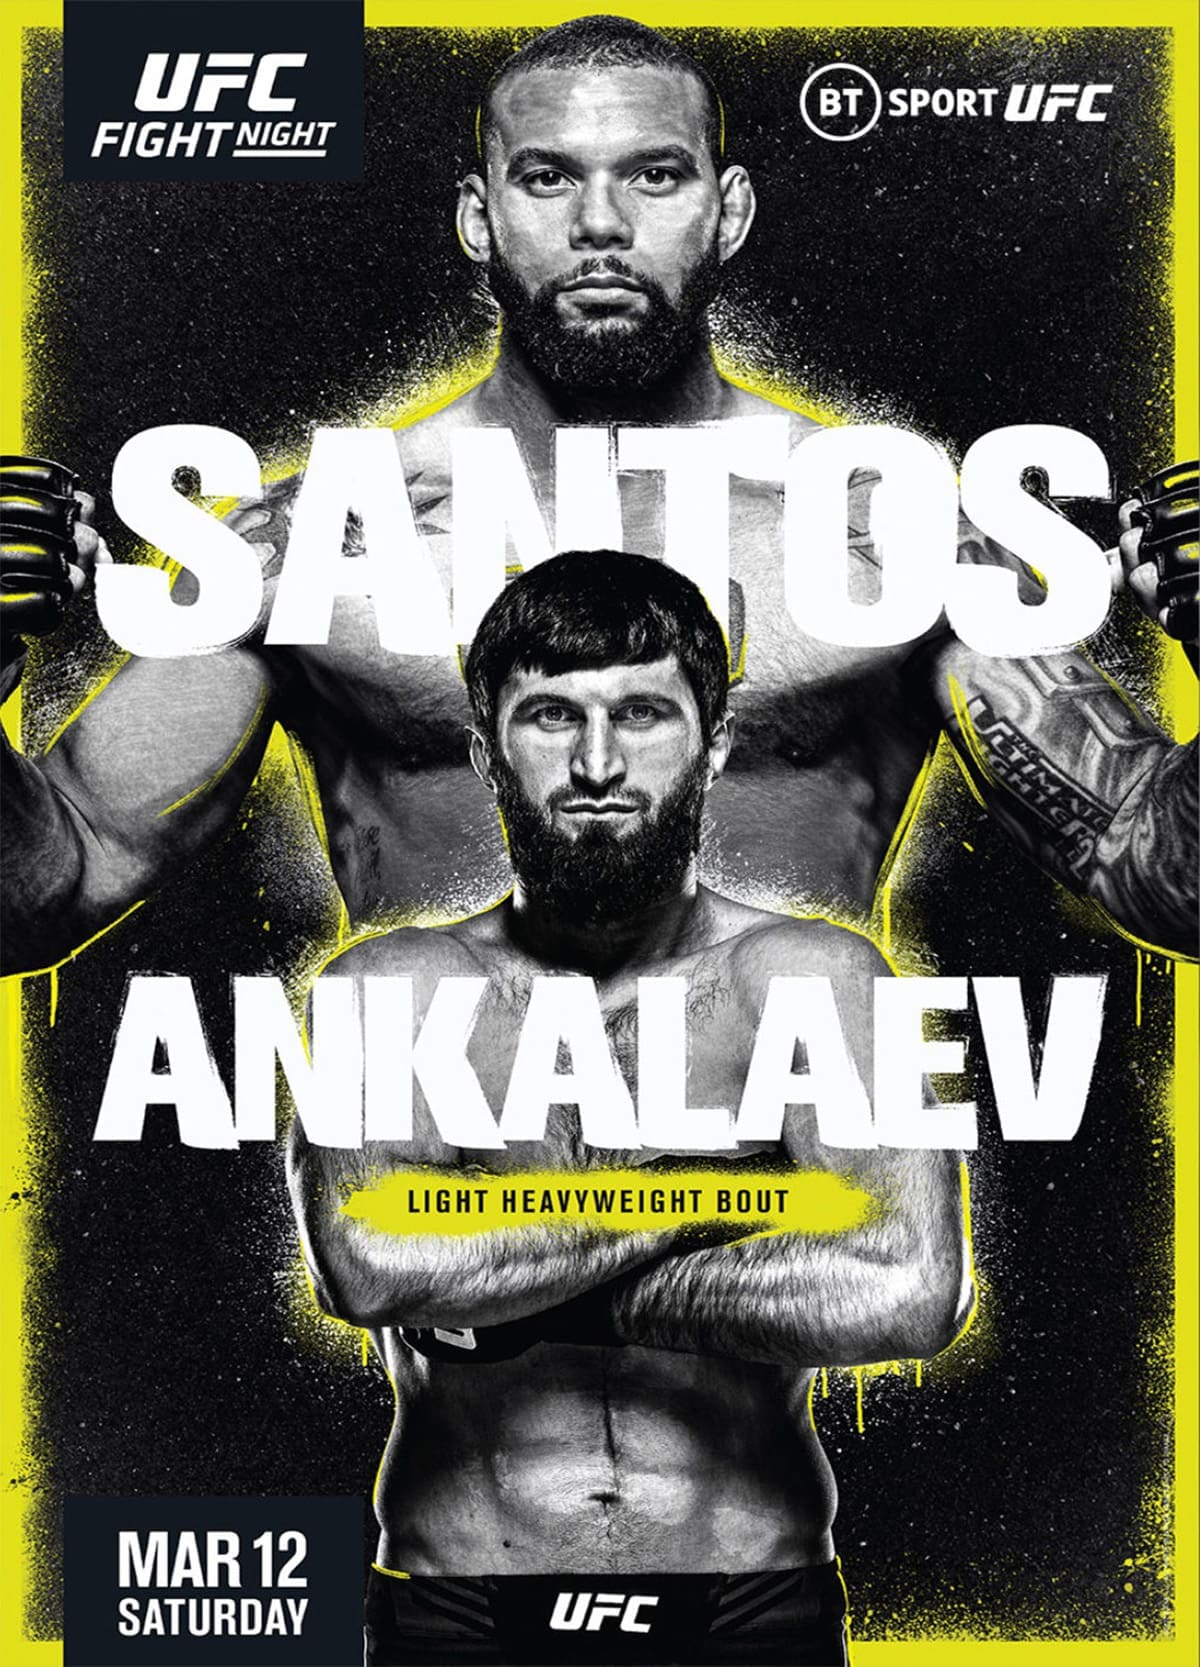 UFC Fight Night 203: Сантос - Анкалаев дата проведения, кард, участники и результаты